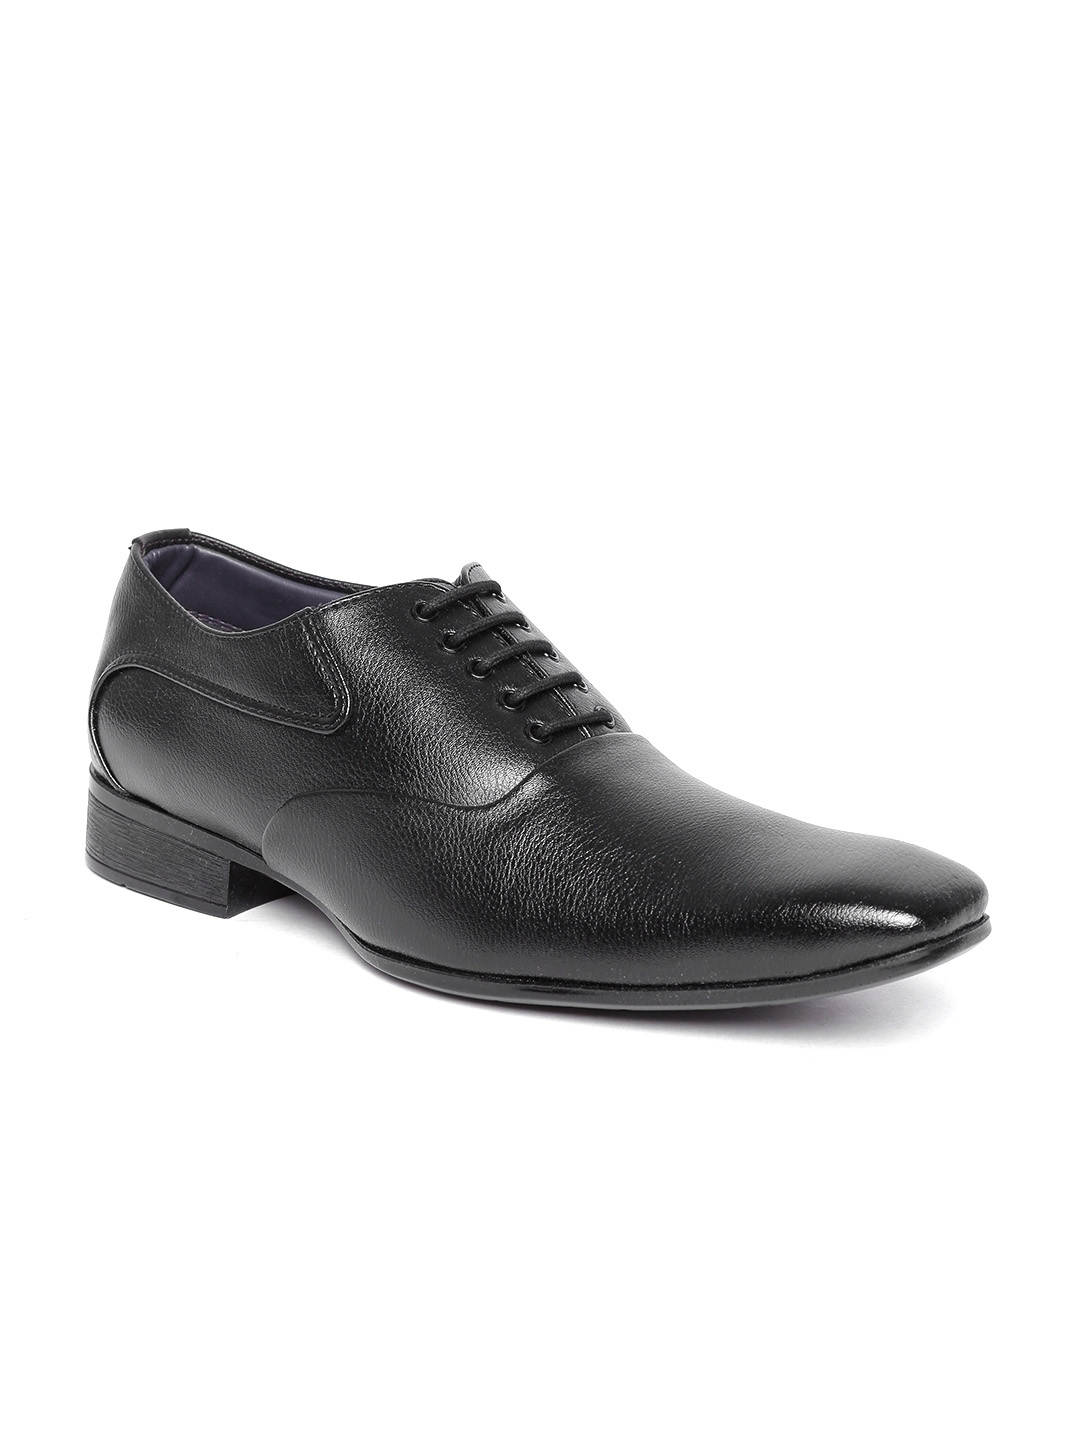 Buy Bata Men Black Glossy Textured Formal Shoes - Formal Shoes for Men ...